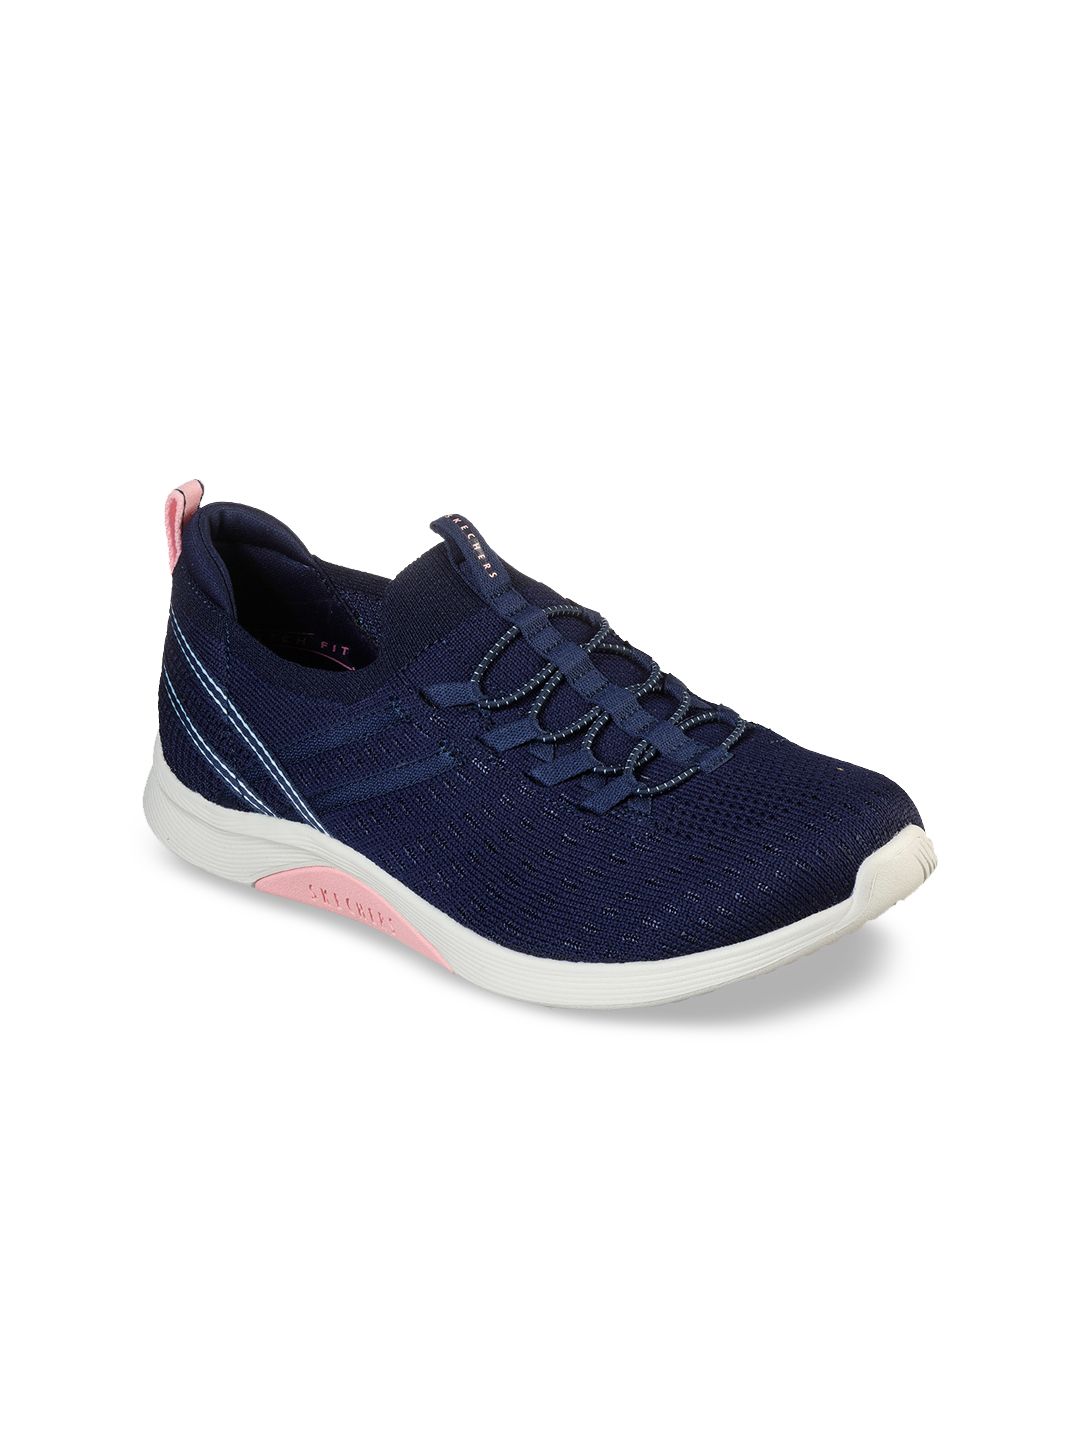 Skechers Women Navy Blue Woven Design Sneakers Price in India